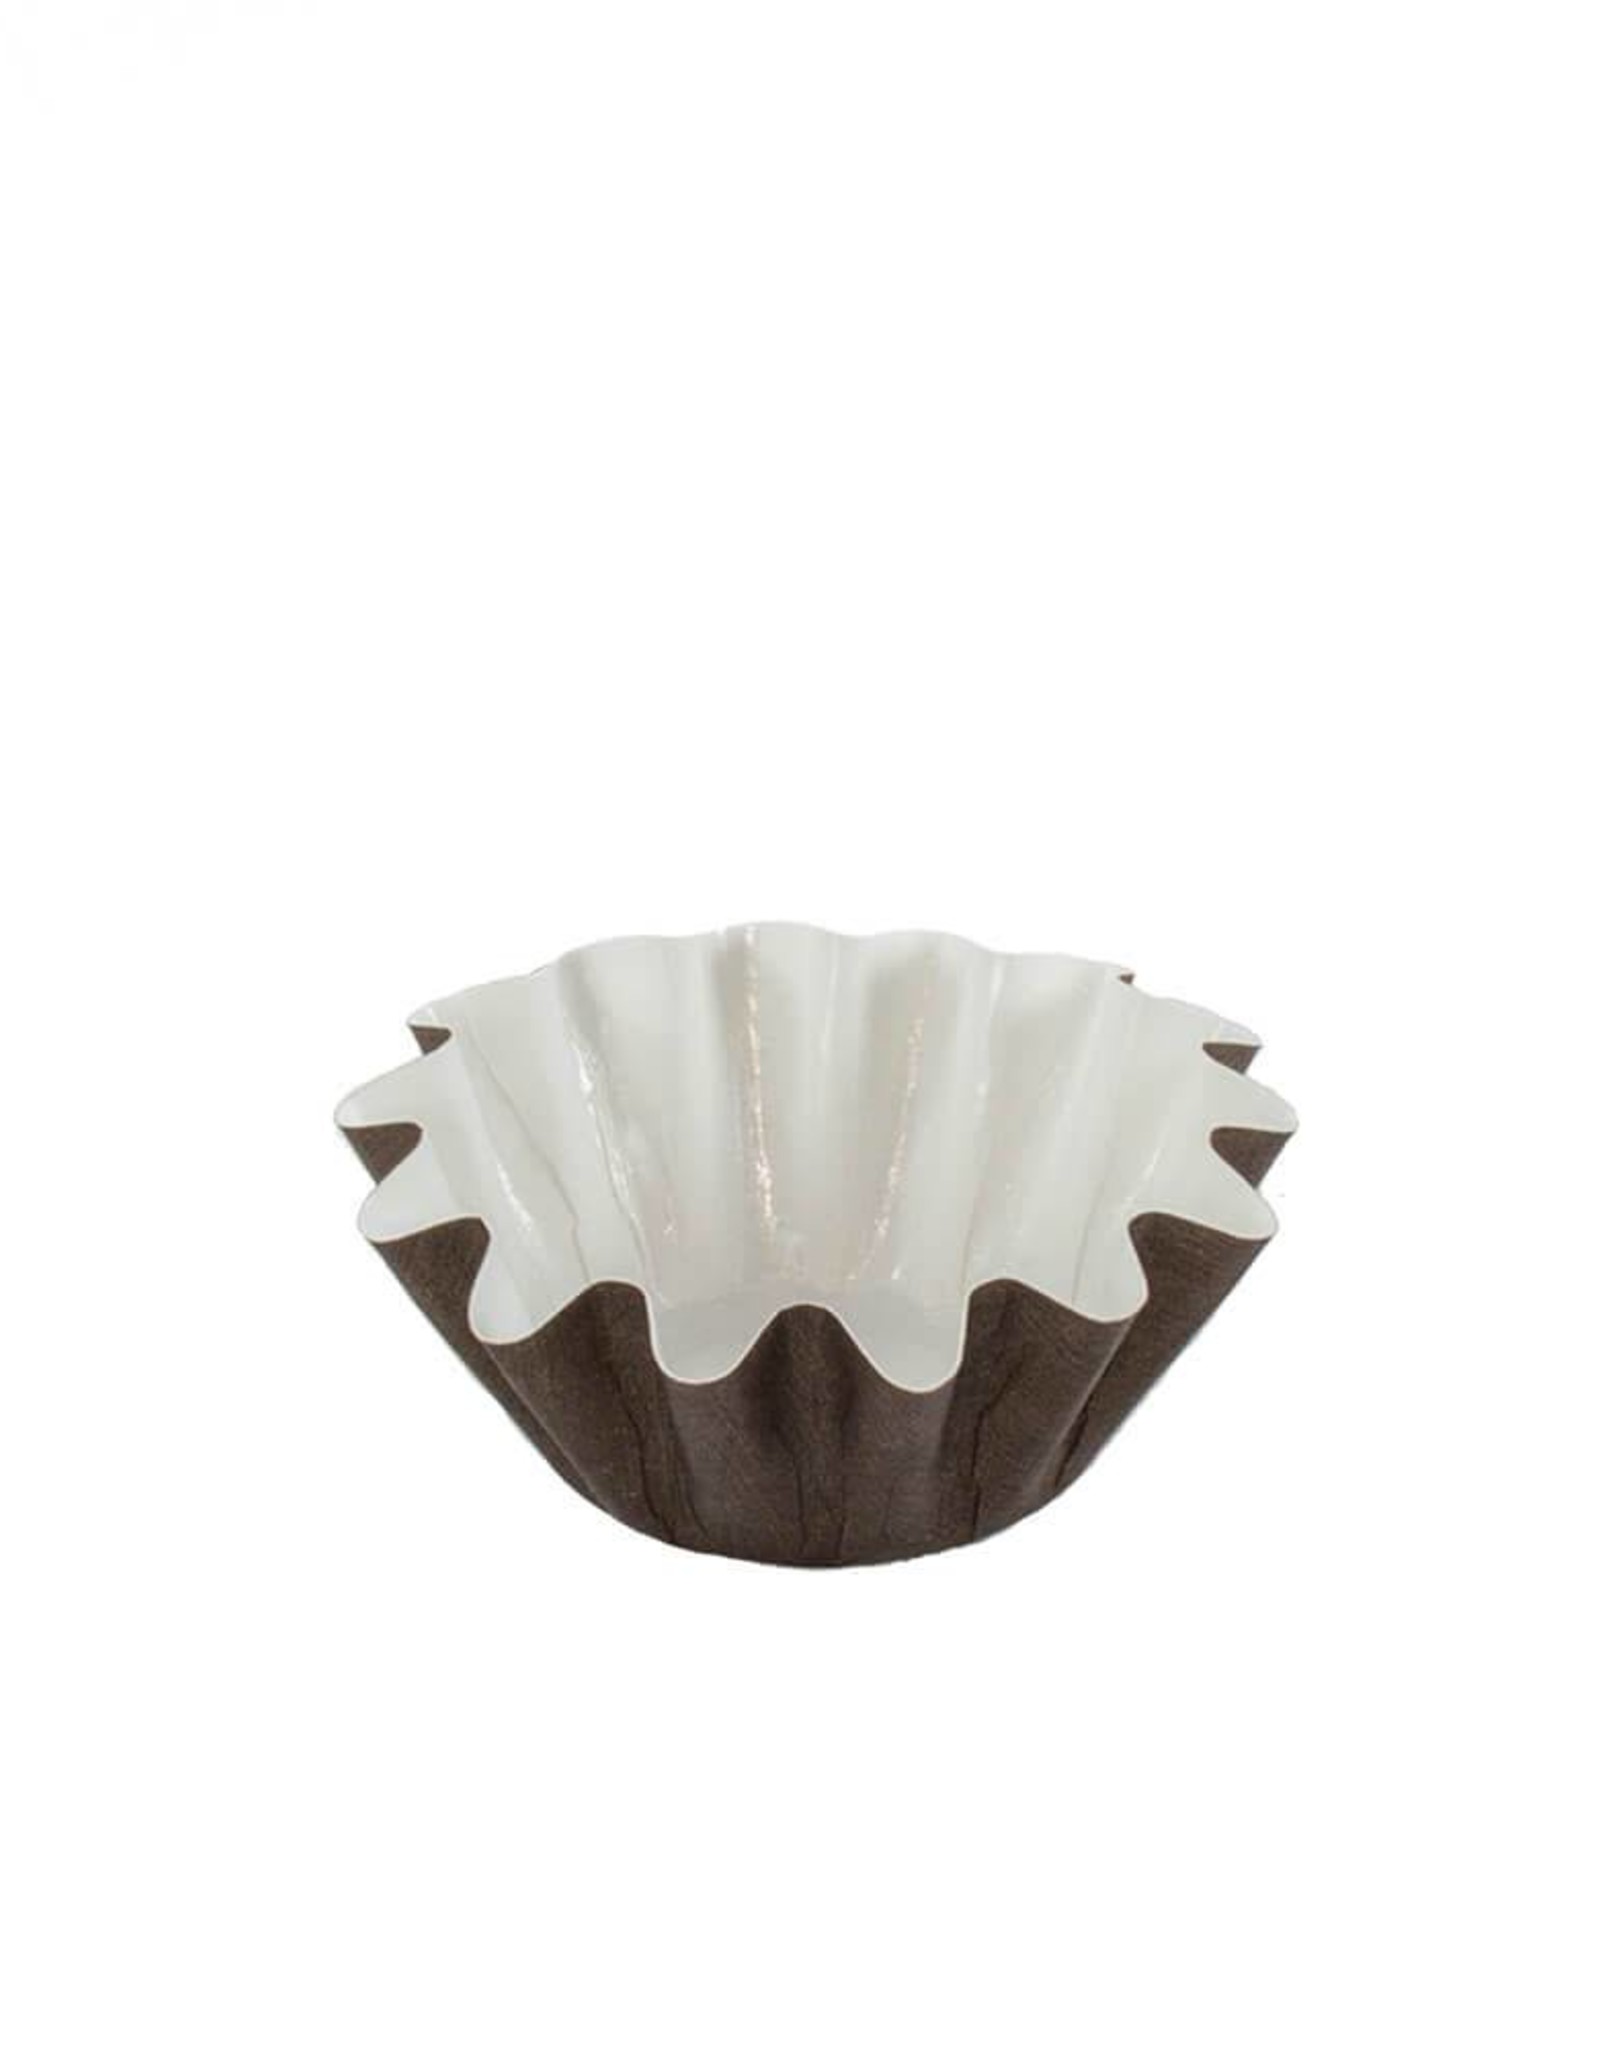 Brown Brioche/Floret Baking Cups (50ct)